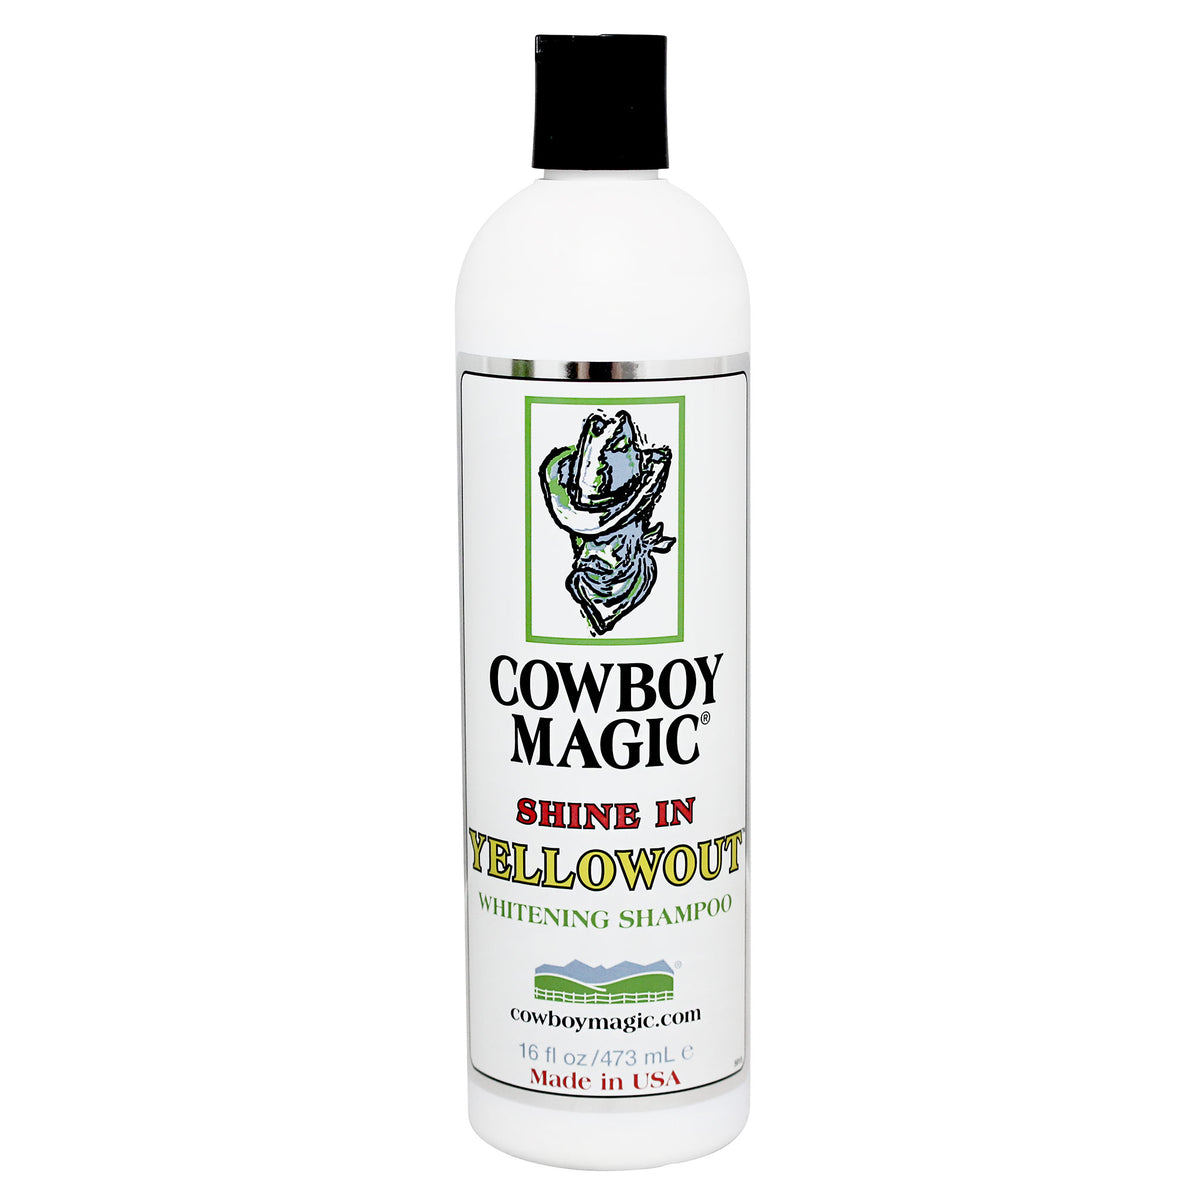 Cowboy Magic Shine In Yellowout Whitening Shampoo